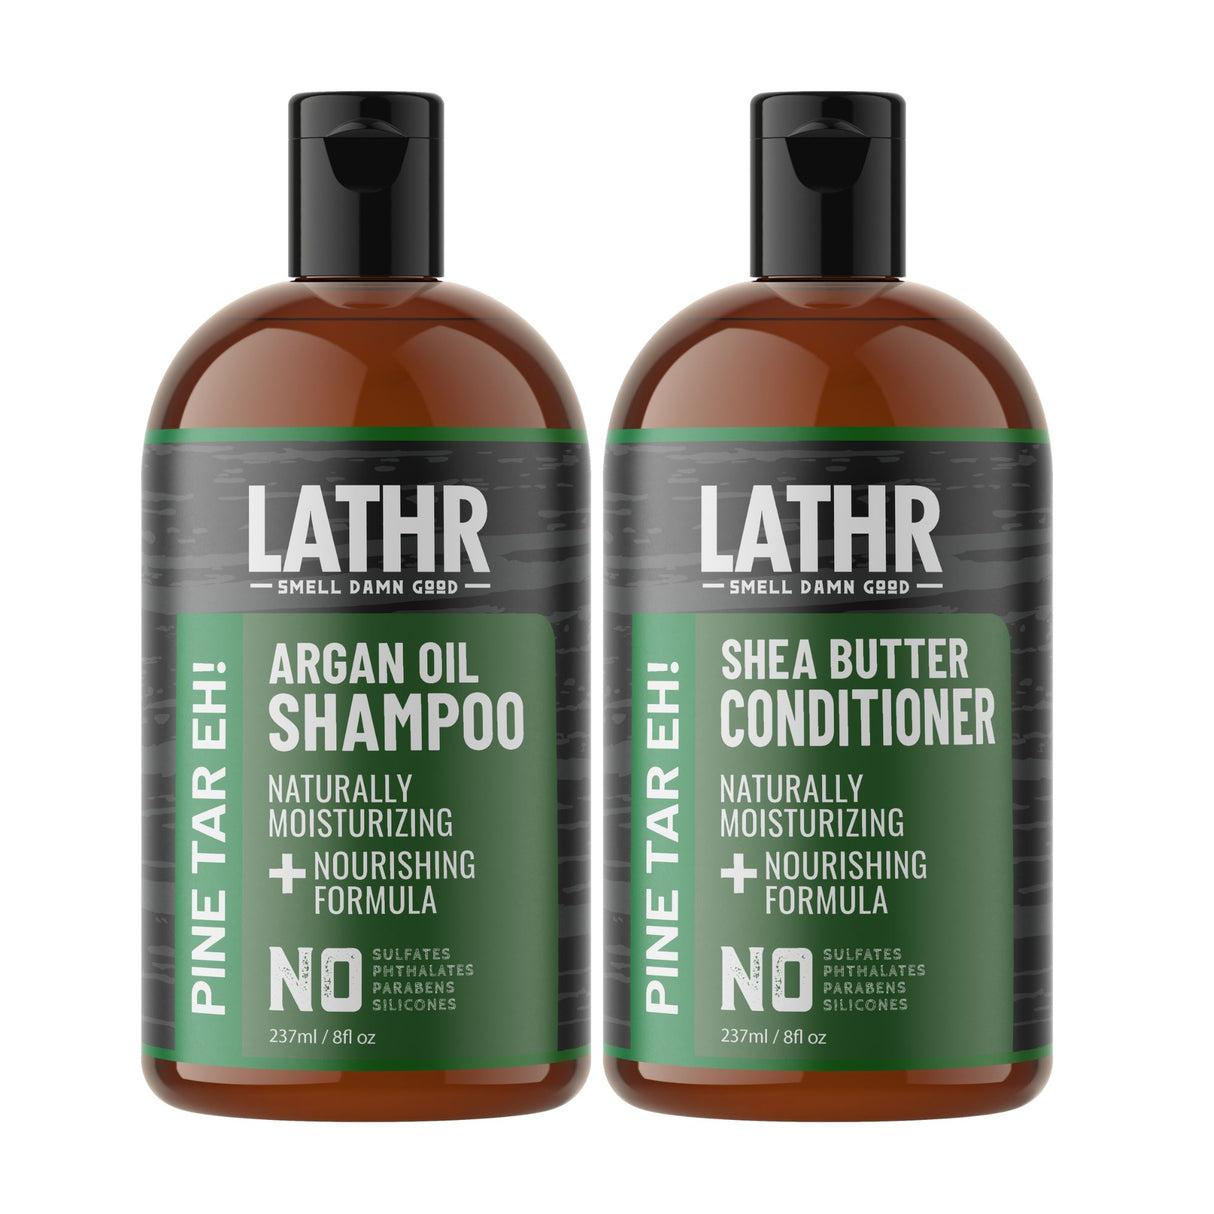 Pine Tar Eh! Hair Care Essentials